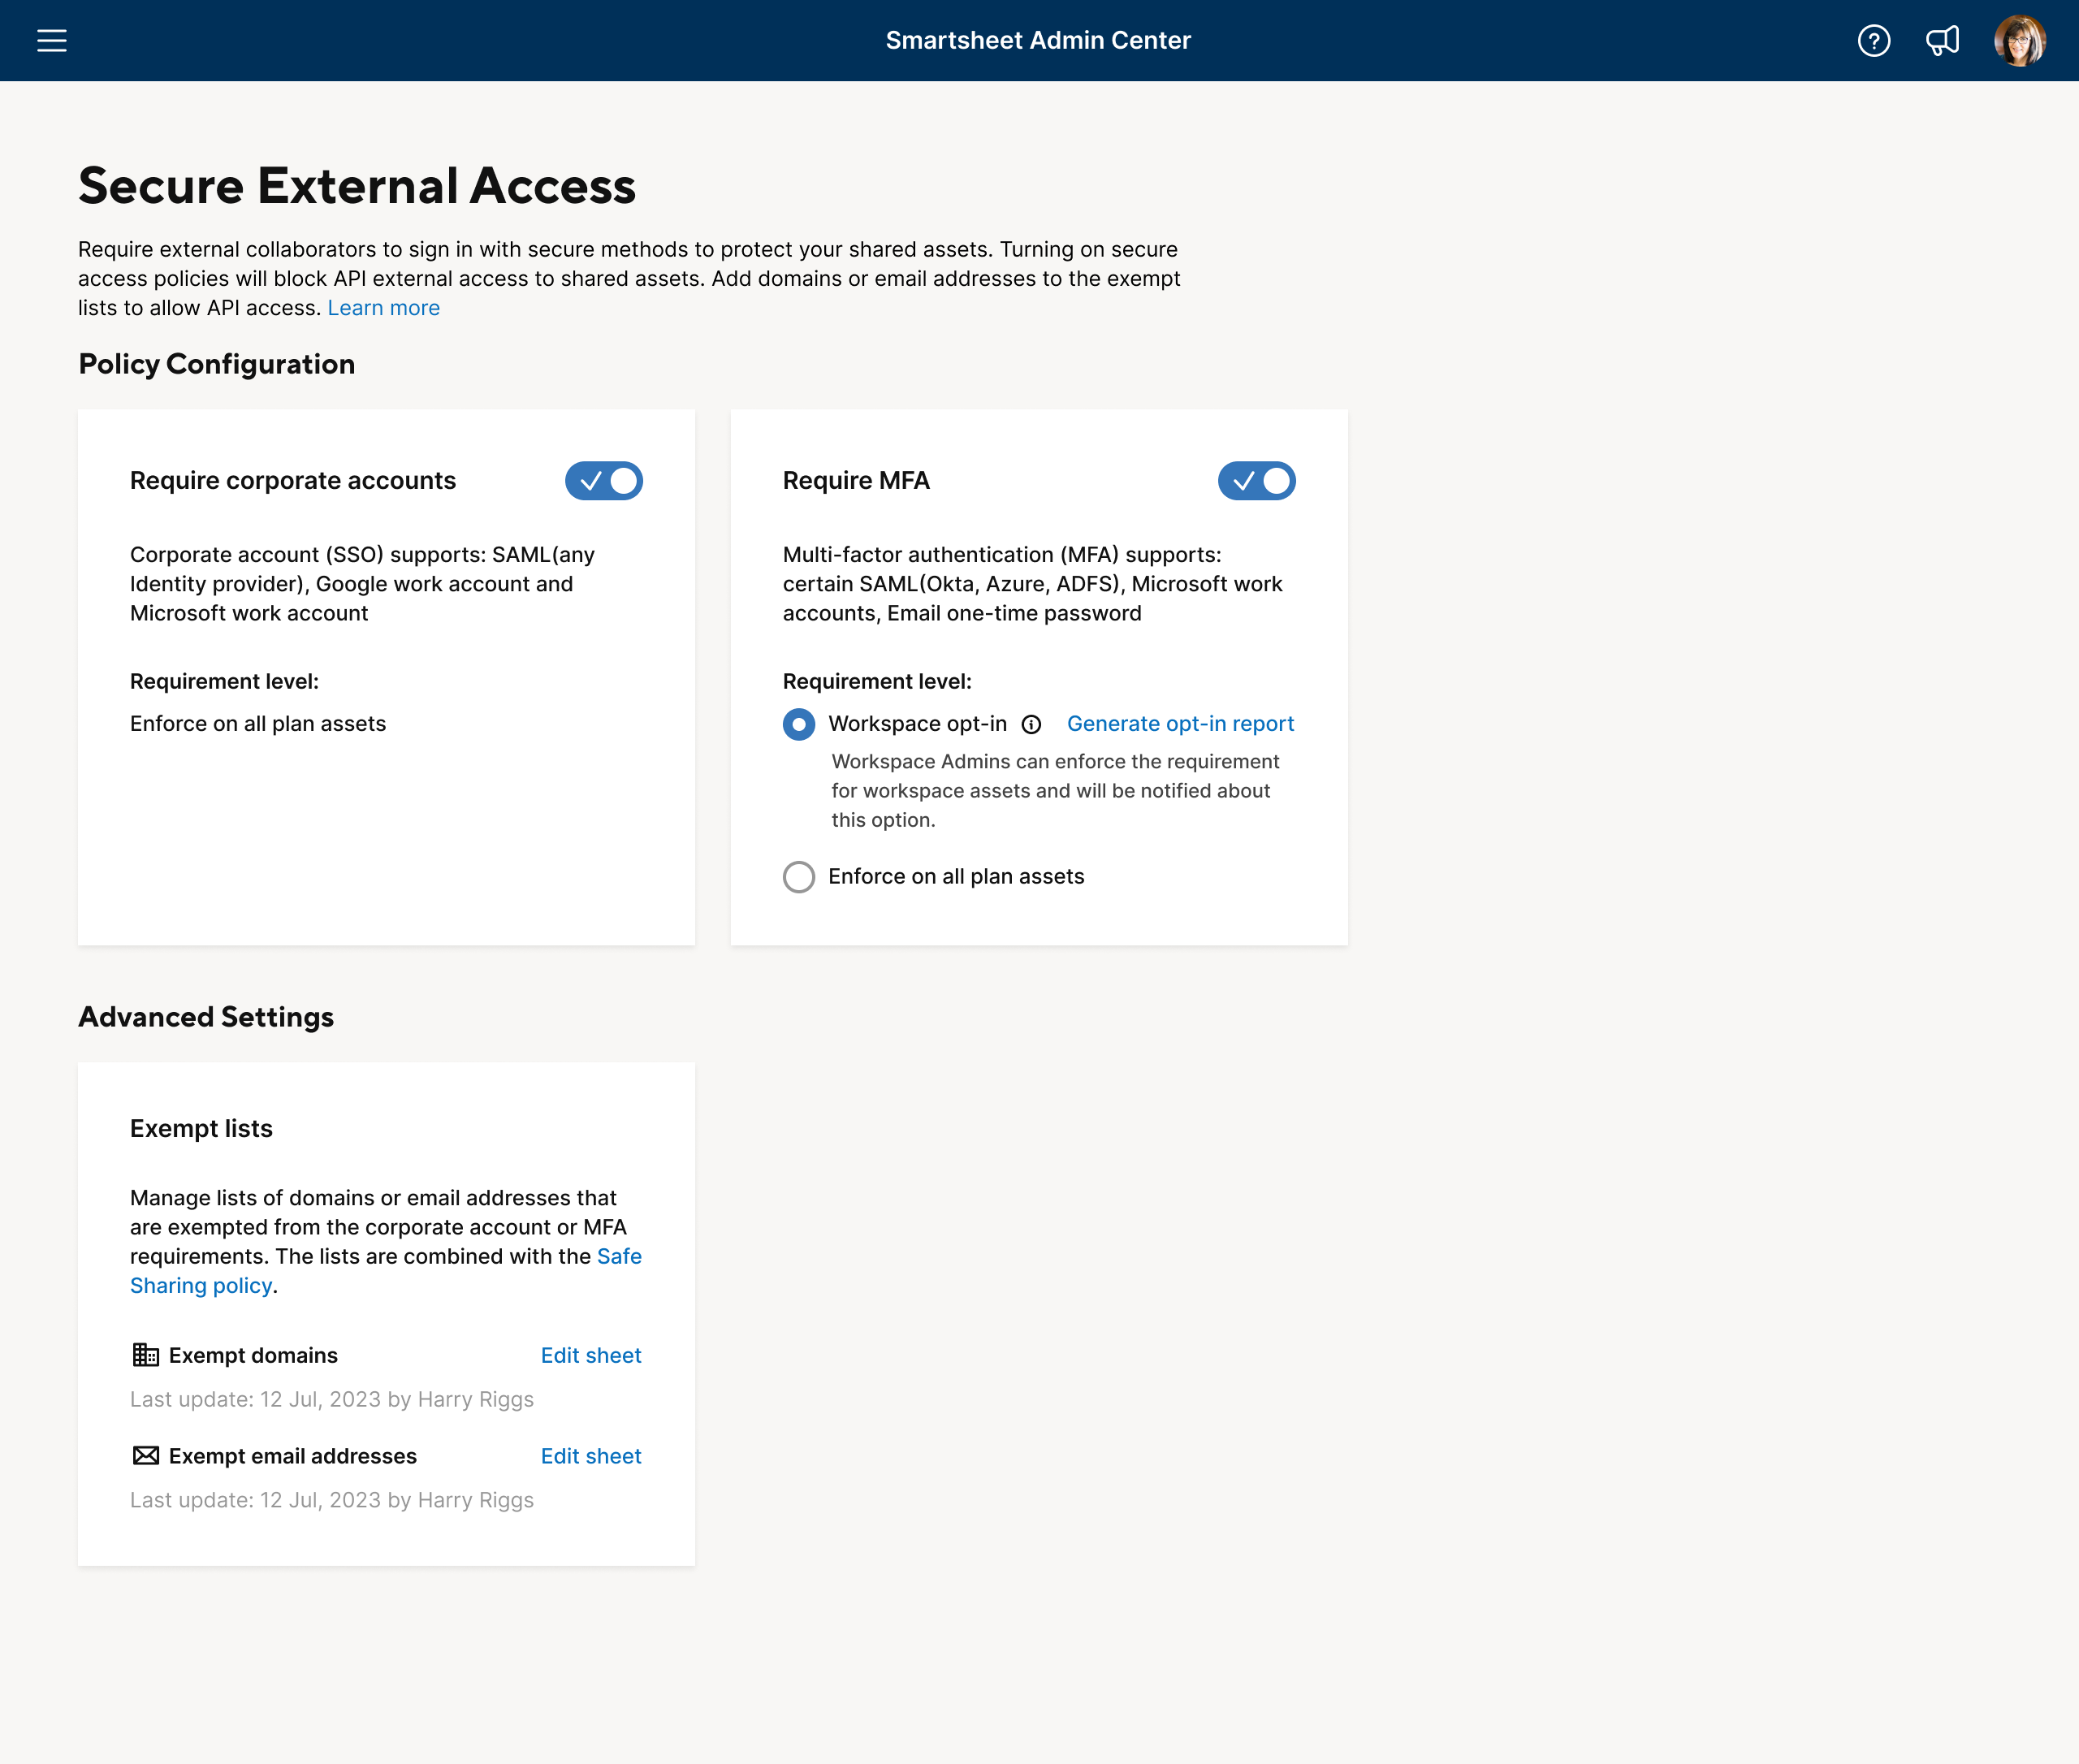 Smartsheet Admin Center Secure External Access screen